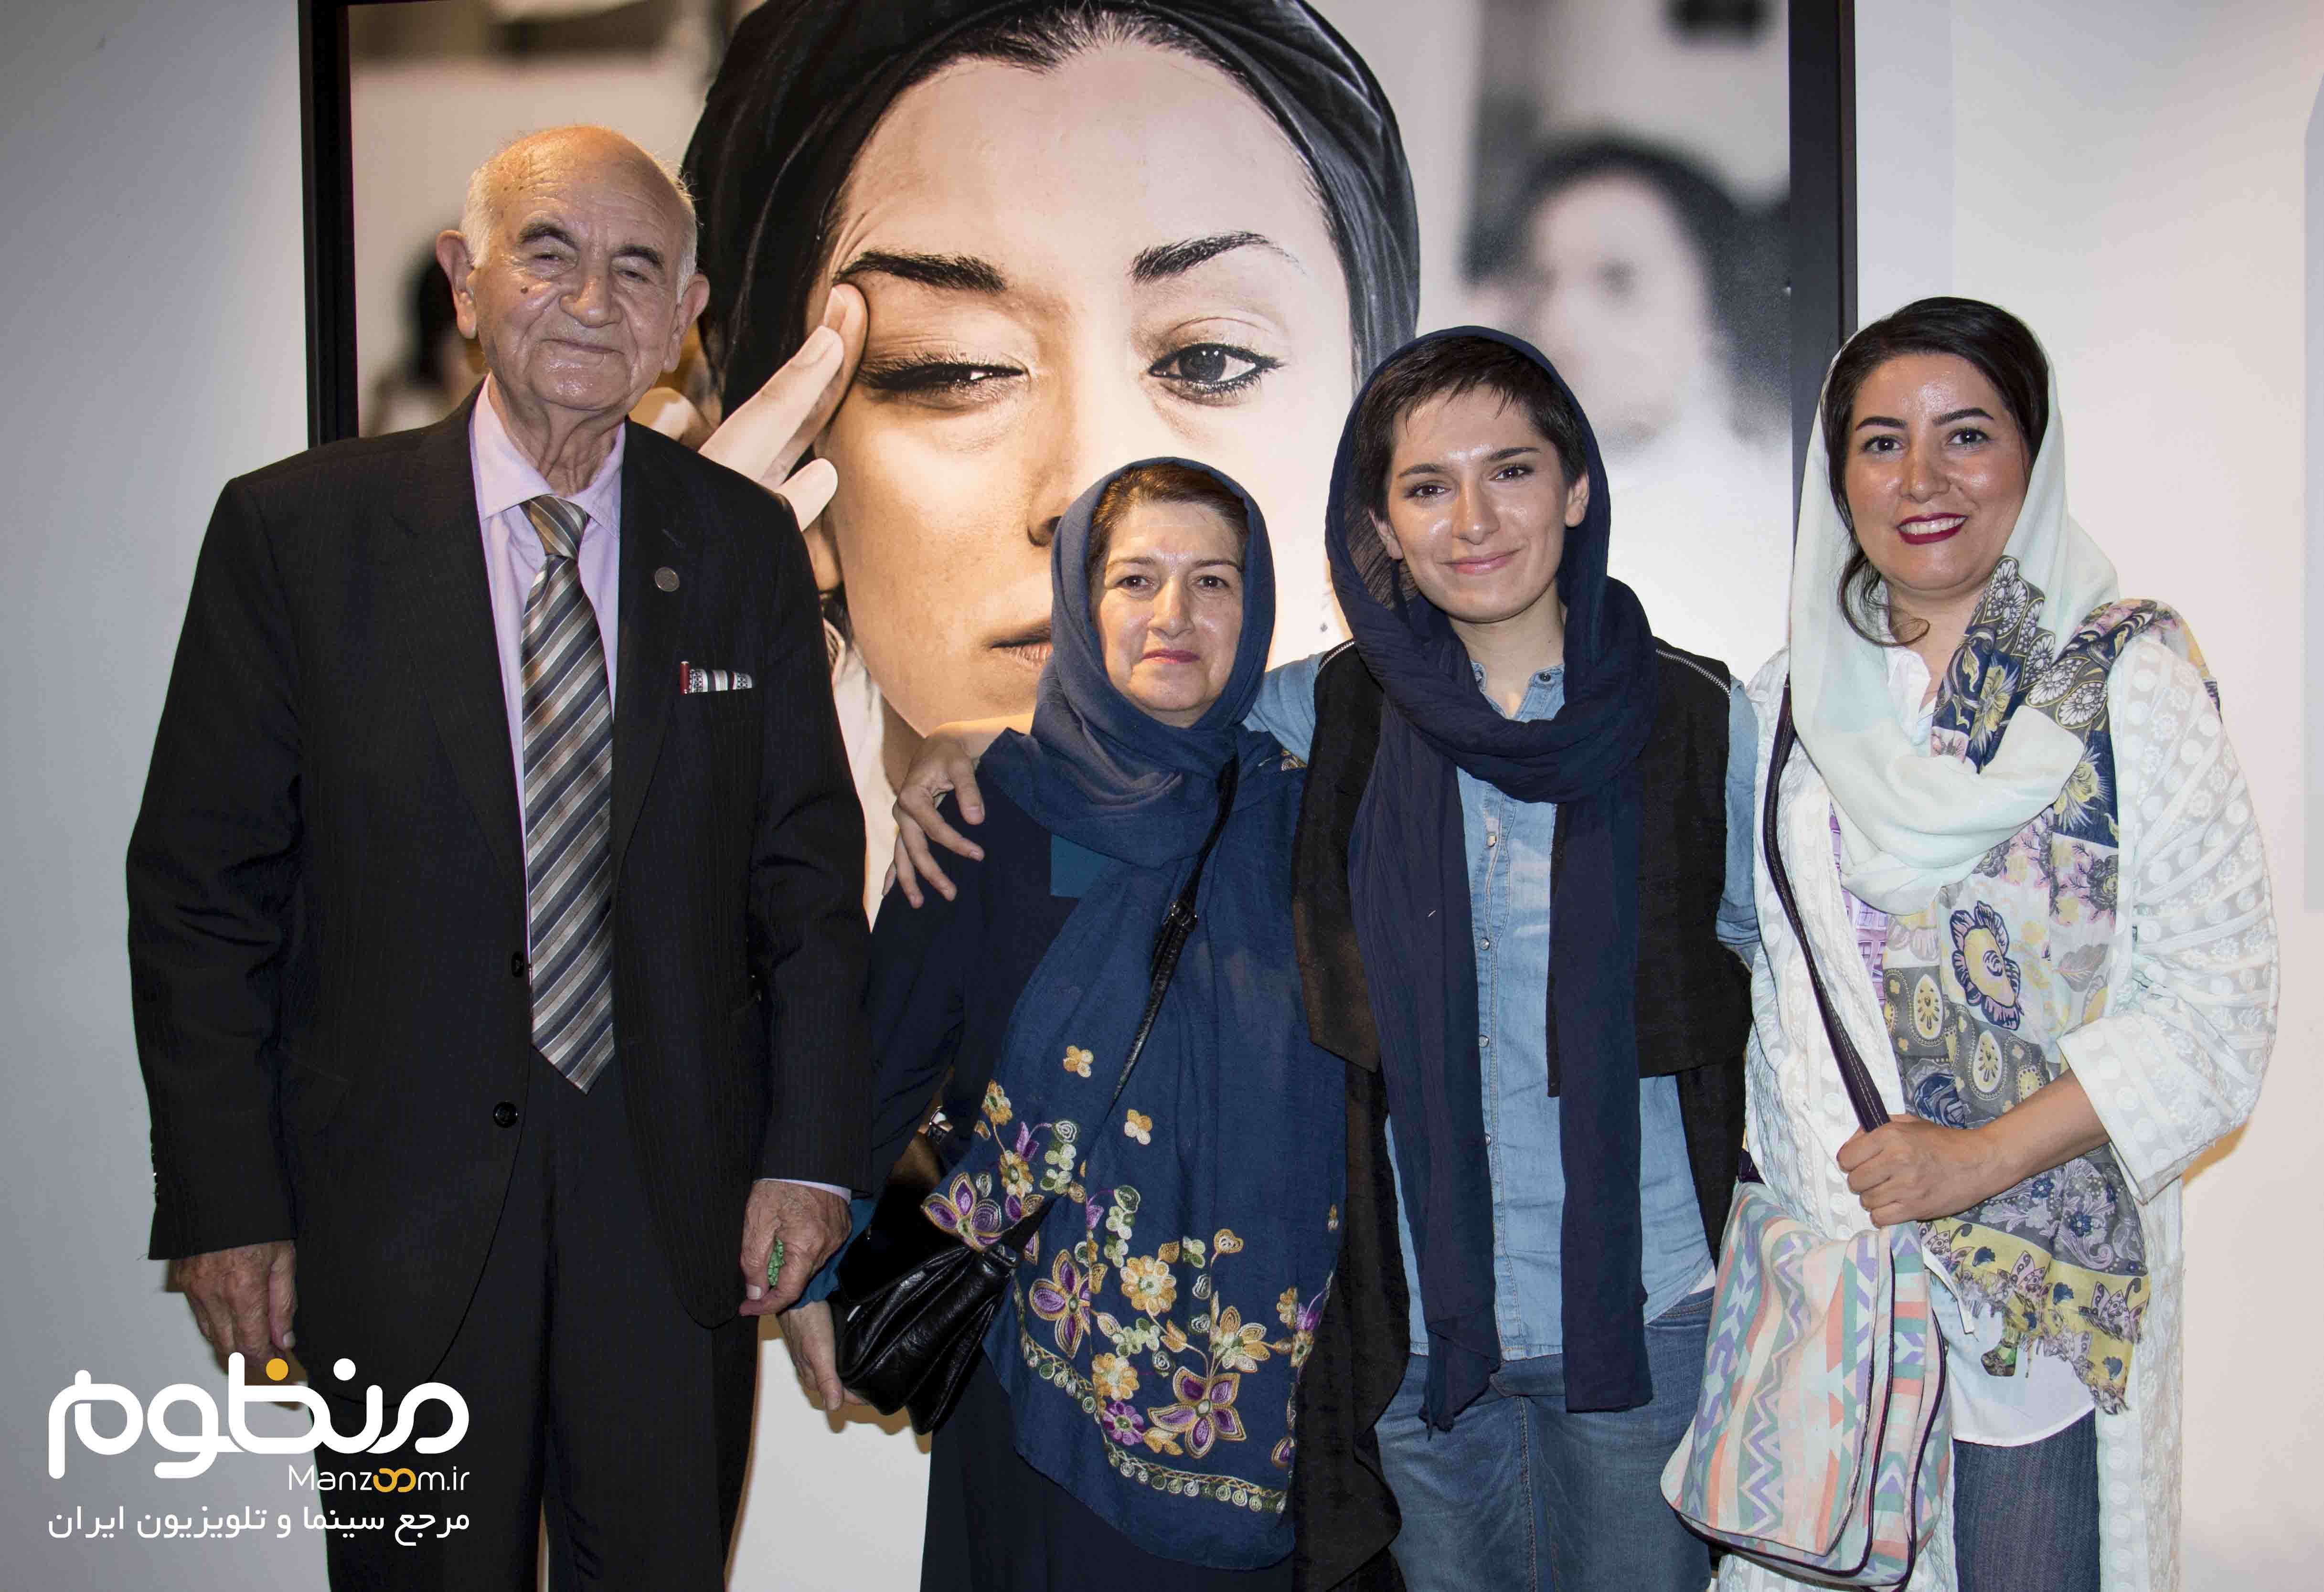 نوید محمدزاده در افتتاحیه گالری عکس «لانتوری»